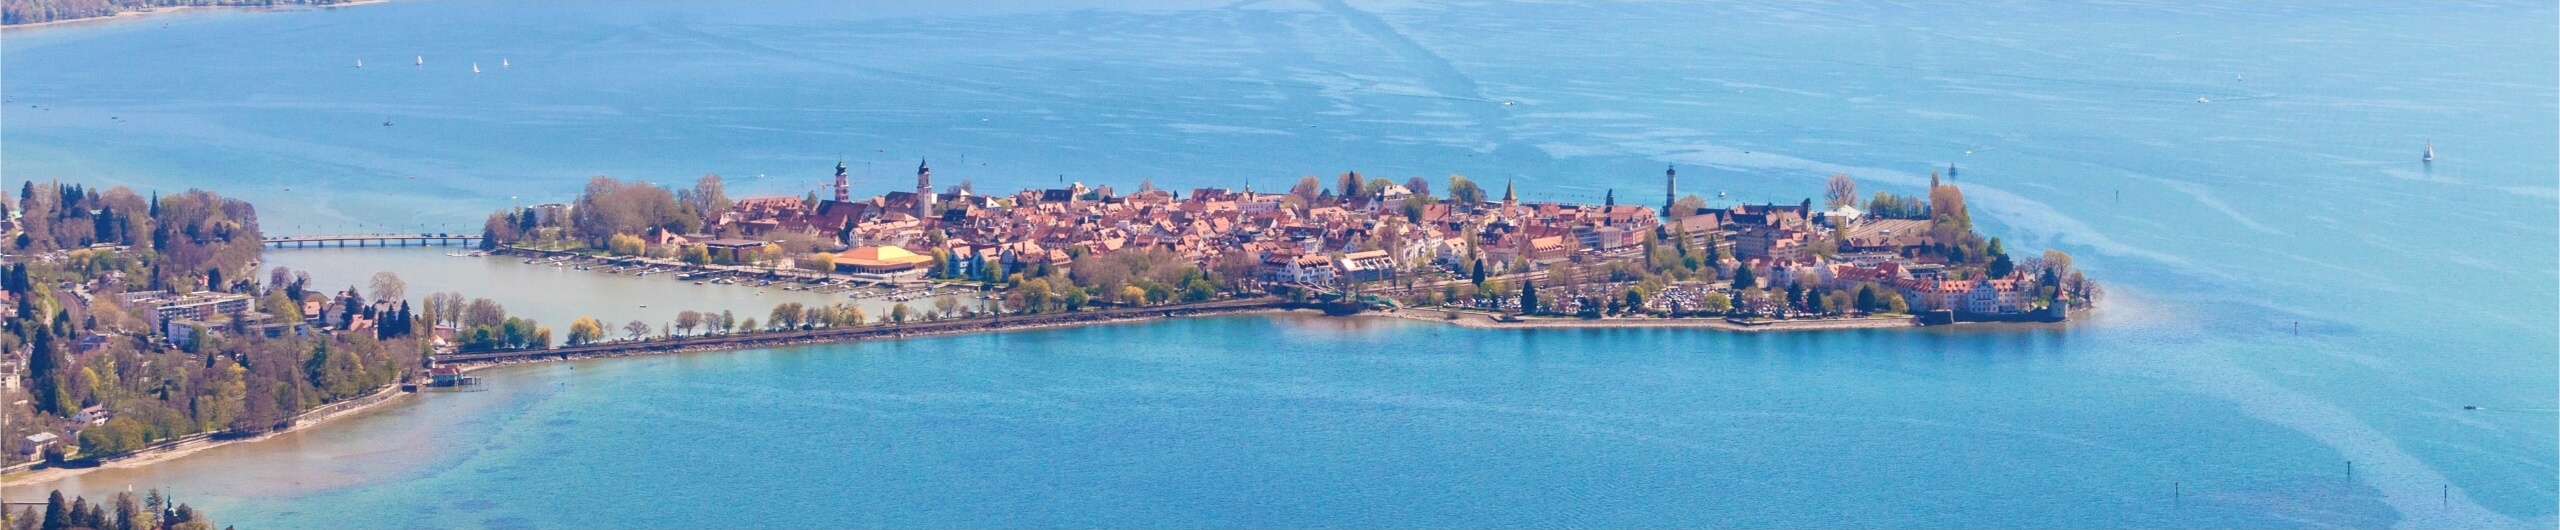 Luftaufnahme von Lindau am Bodensee